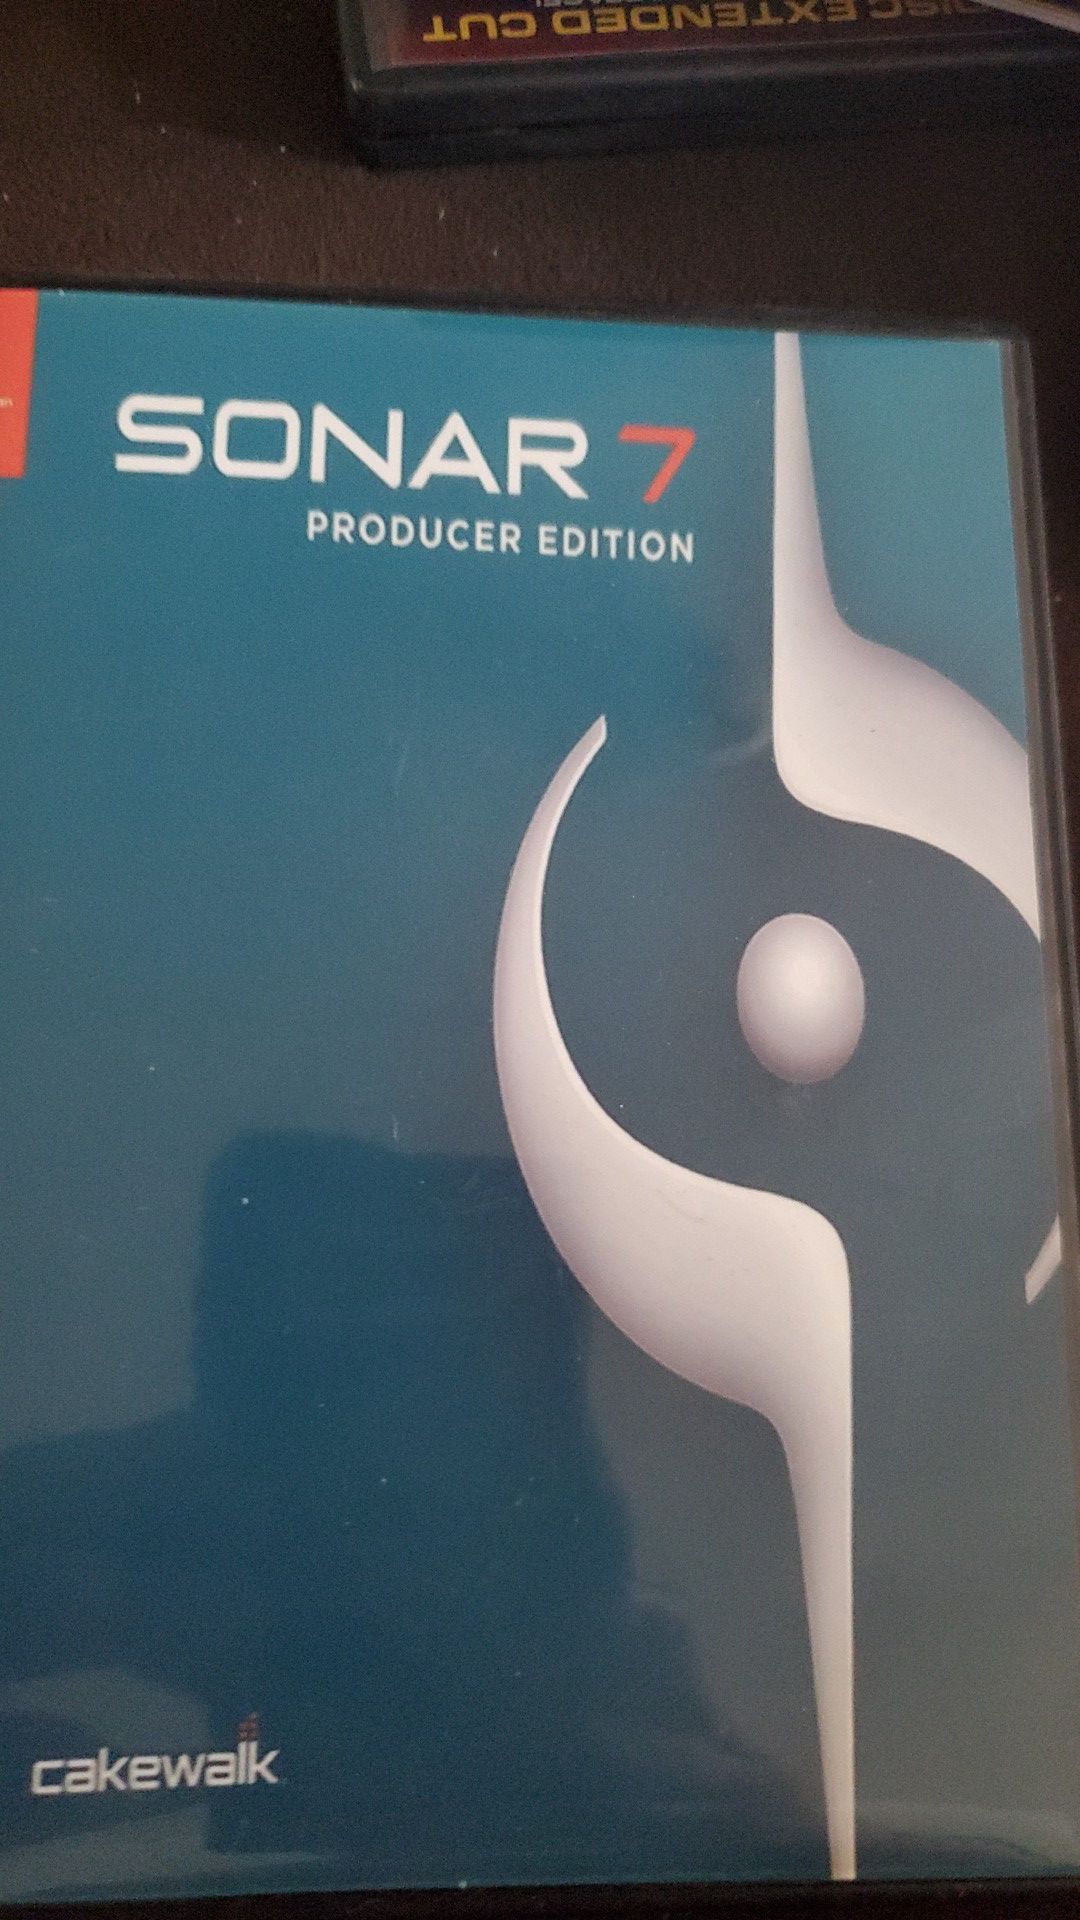 Sonar 7 producer edition